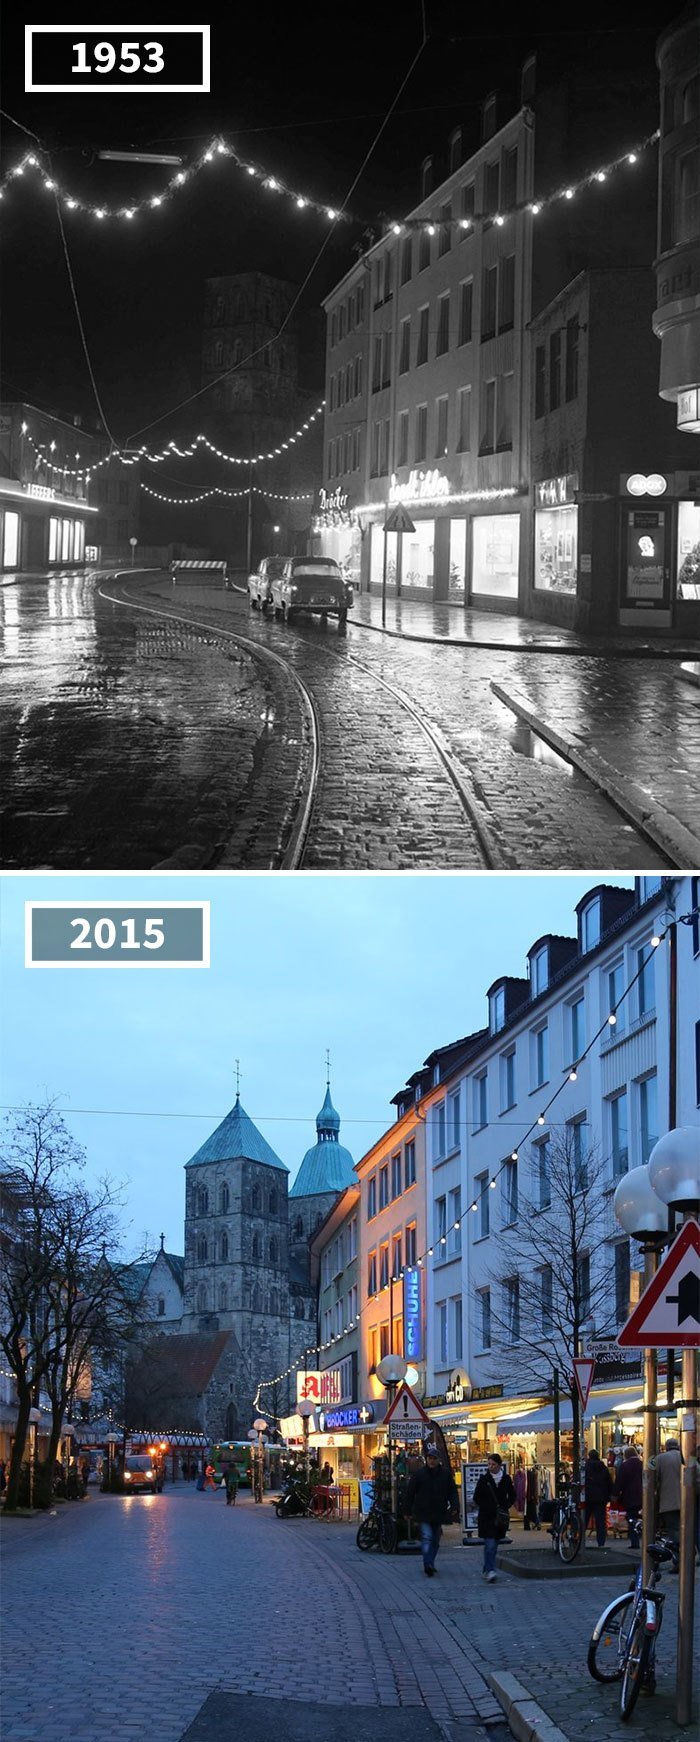 Оснабрюк, Германия, 1953 - 2015 История в фотографиях, бег времени, города, до и после, изменения в мире, фото, фотопроект, фотосвидетельства